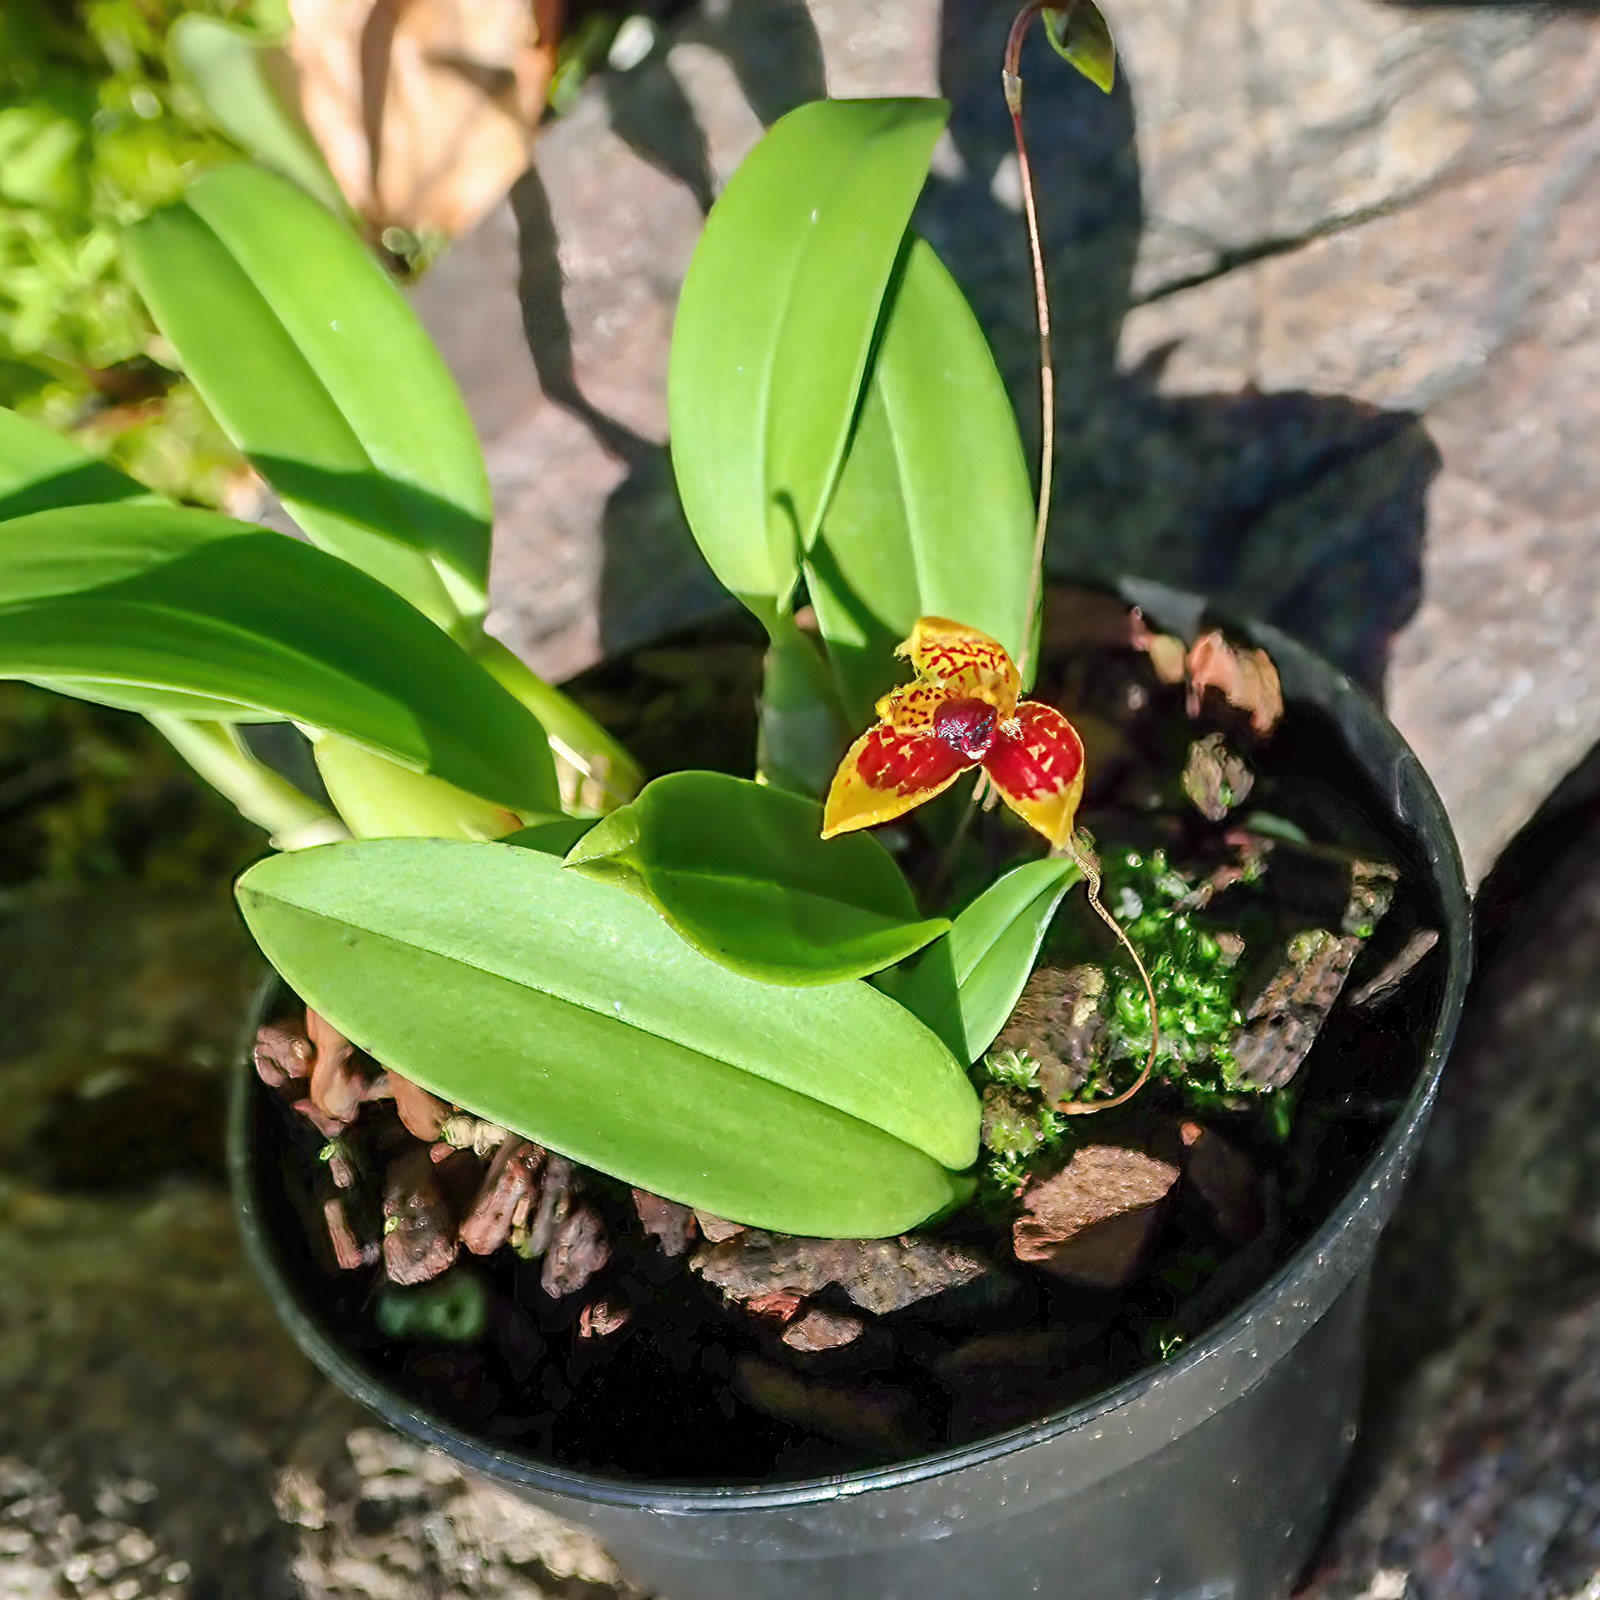 Bulbophyllum catenulatum